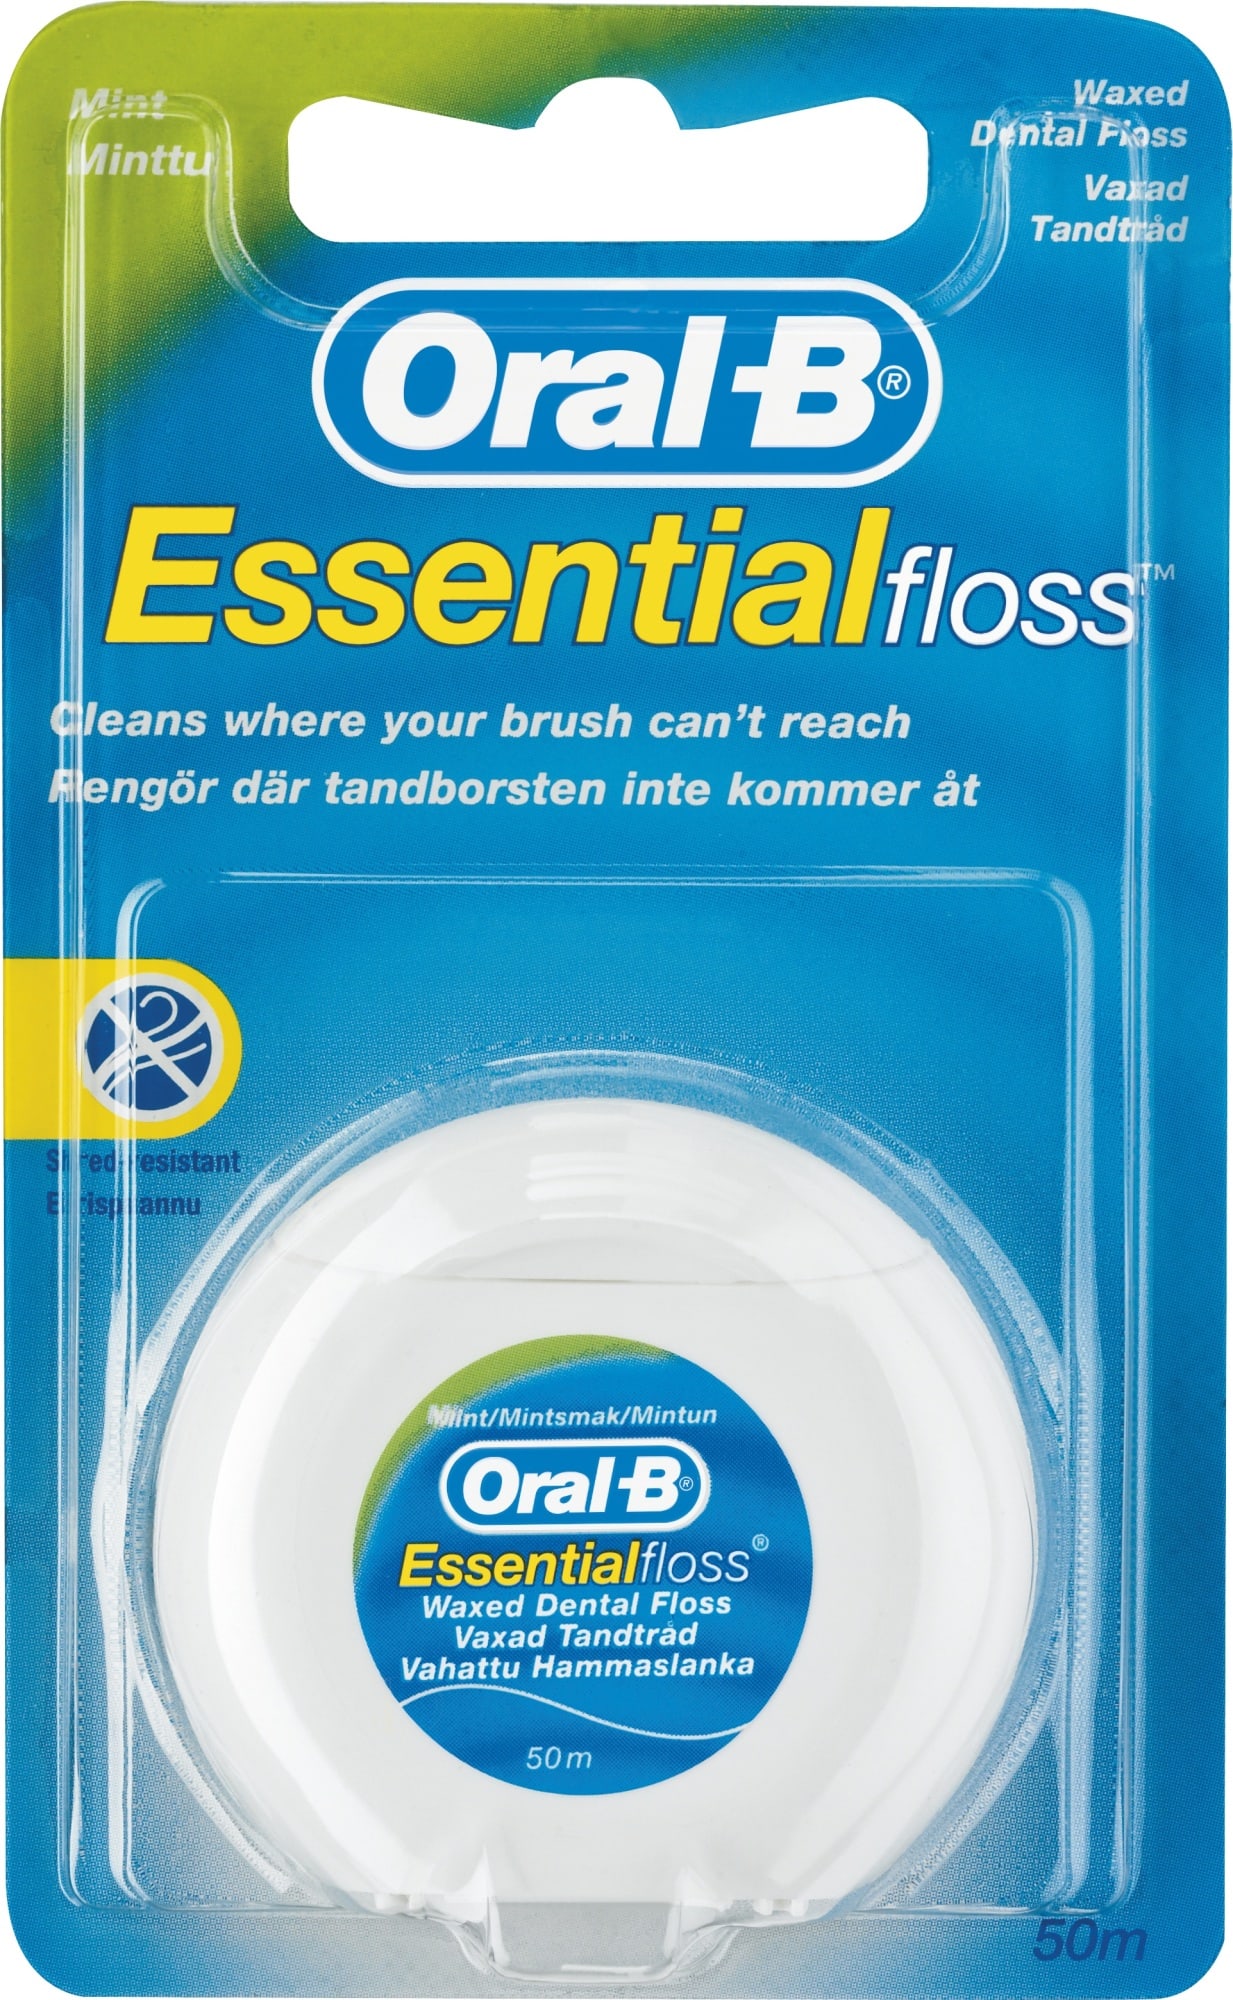 oral-b-essential-floss-mint-50-m-hammaslanka-karkkainen-verkkokauppa